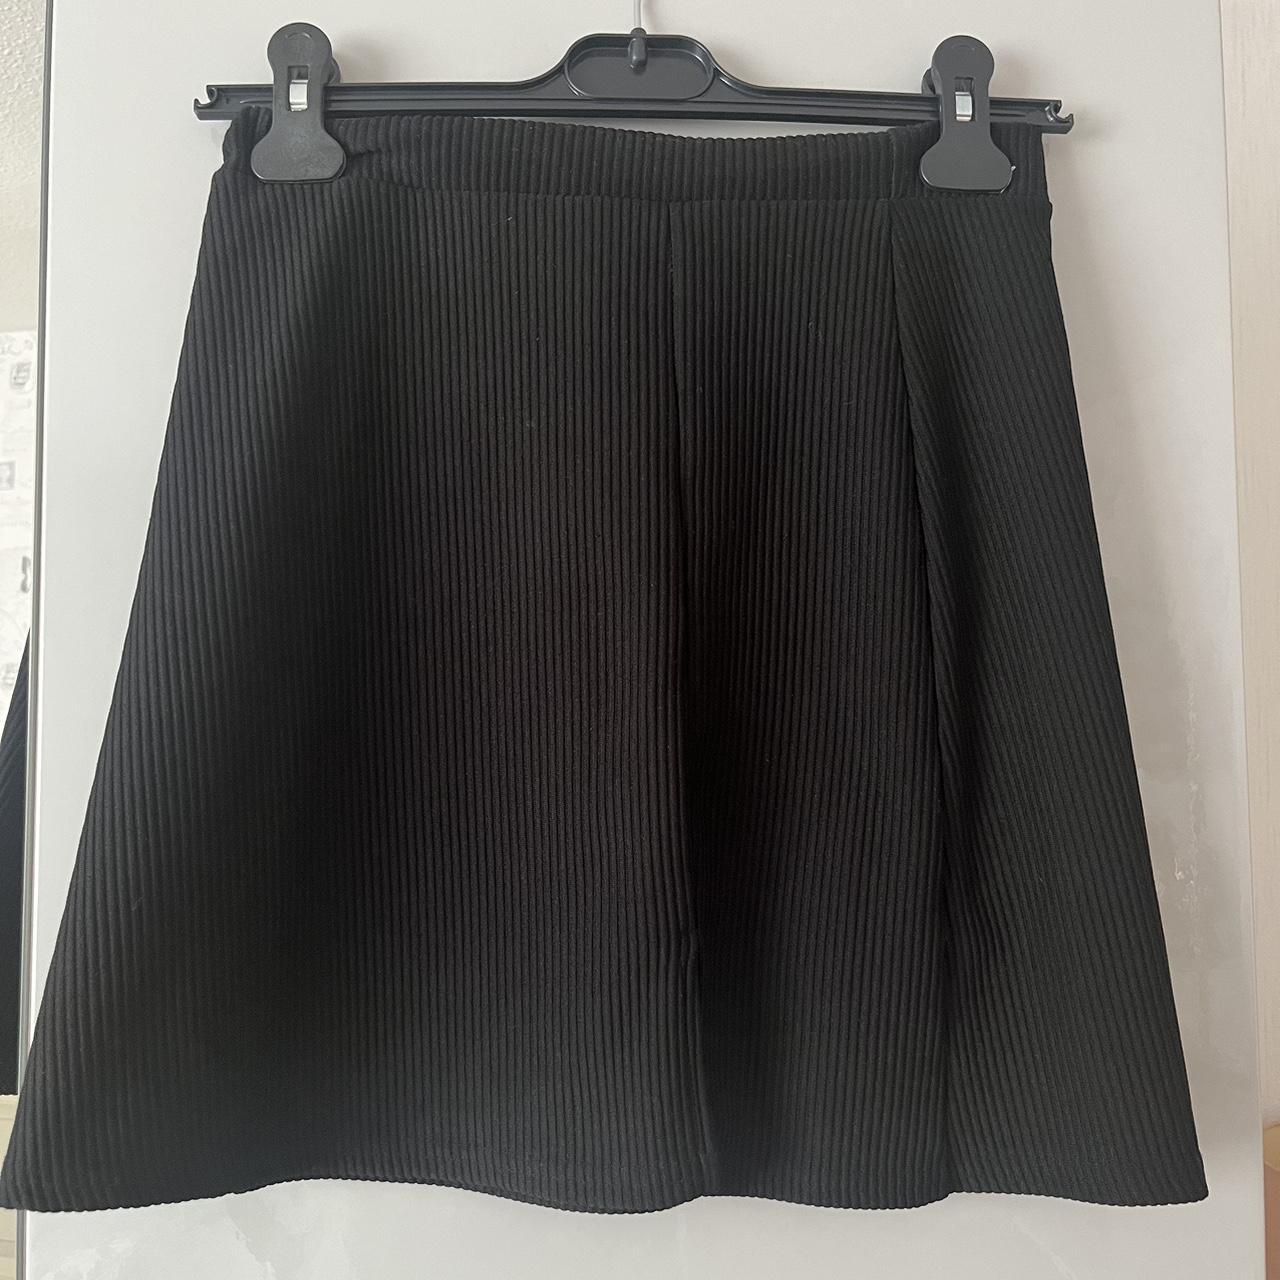 Black ribbed mini skirt with side split #miniskirt... - Depop